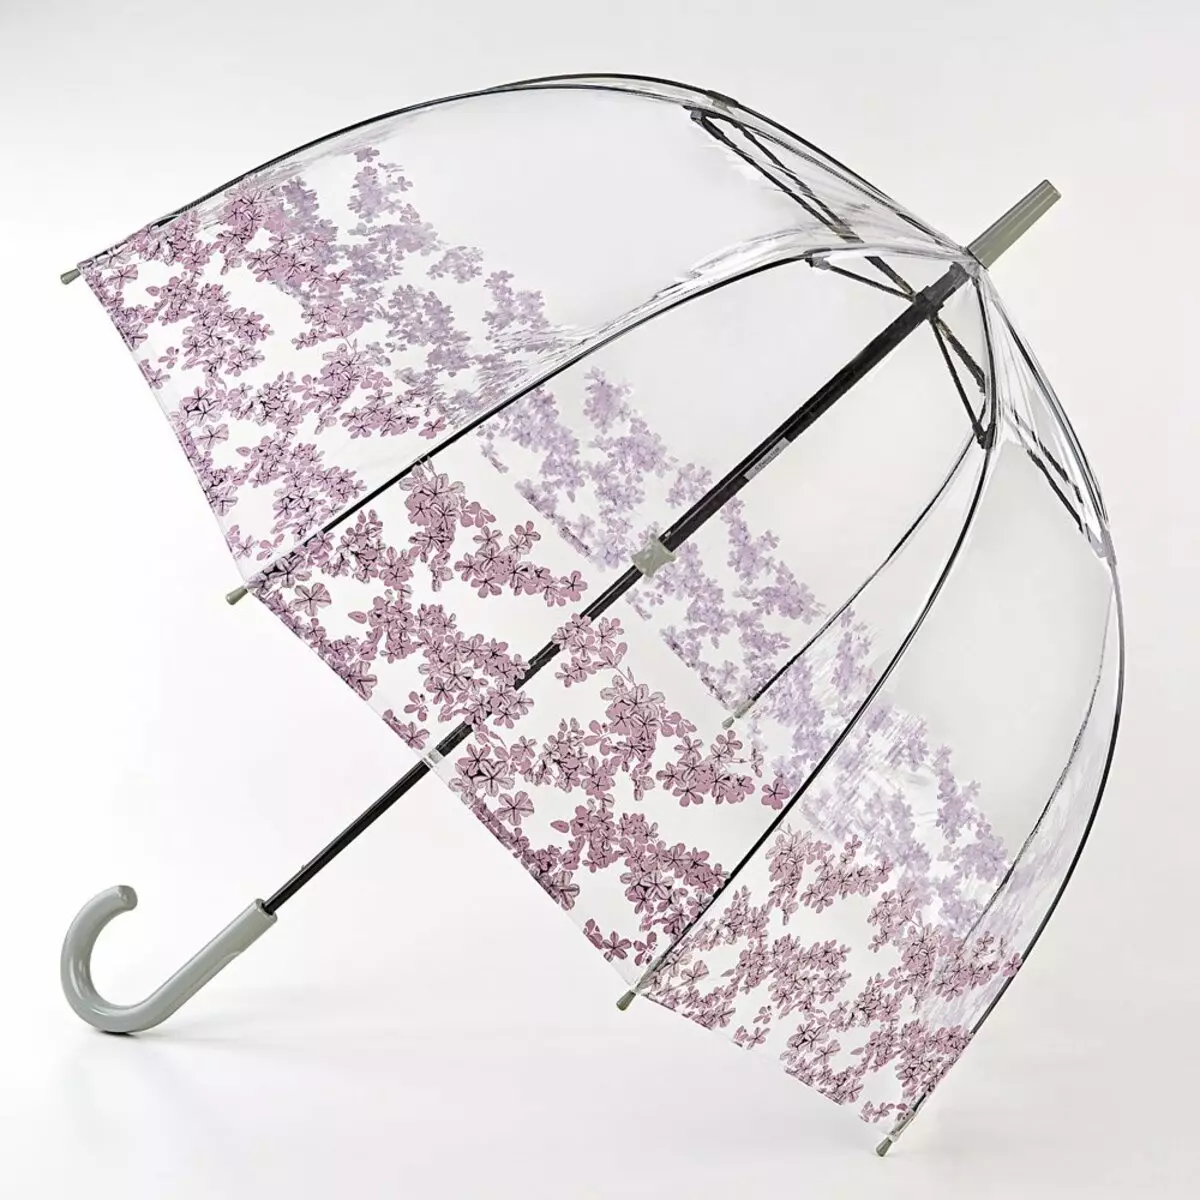 Fulton Umbrellas (53 fotos): skaaimerken fan modellen en resinsjes oer Umbrellas 15229_15